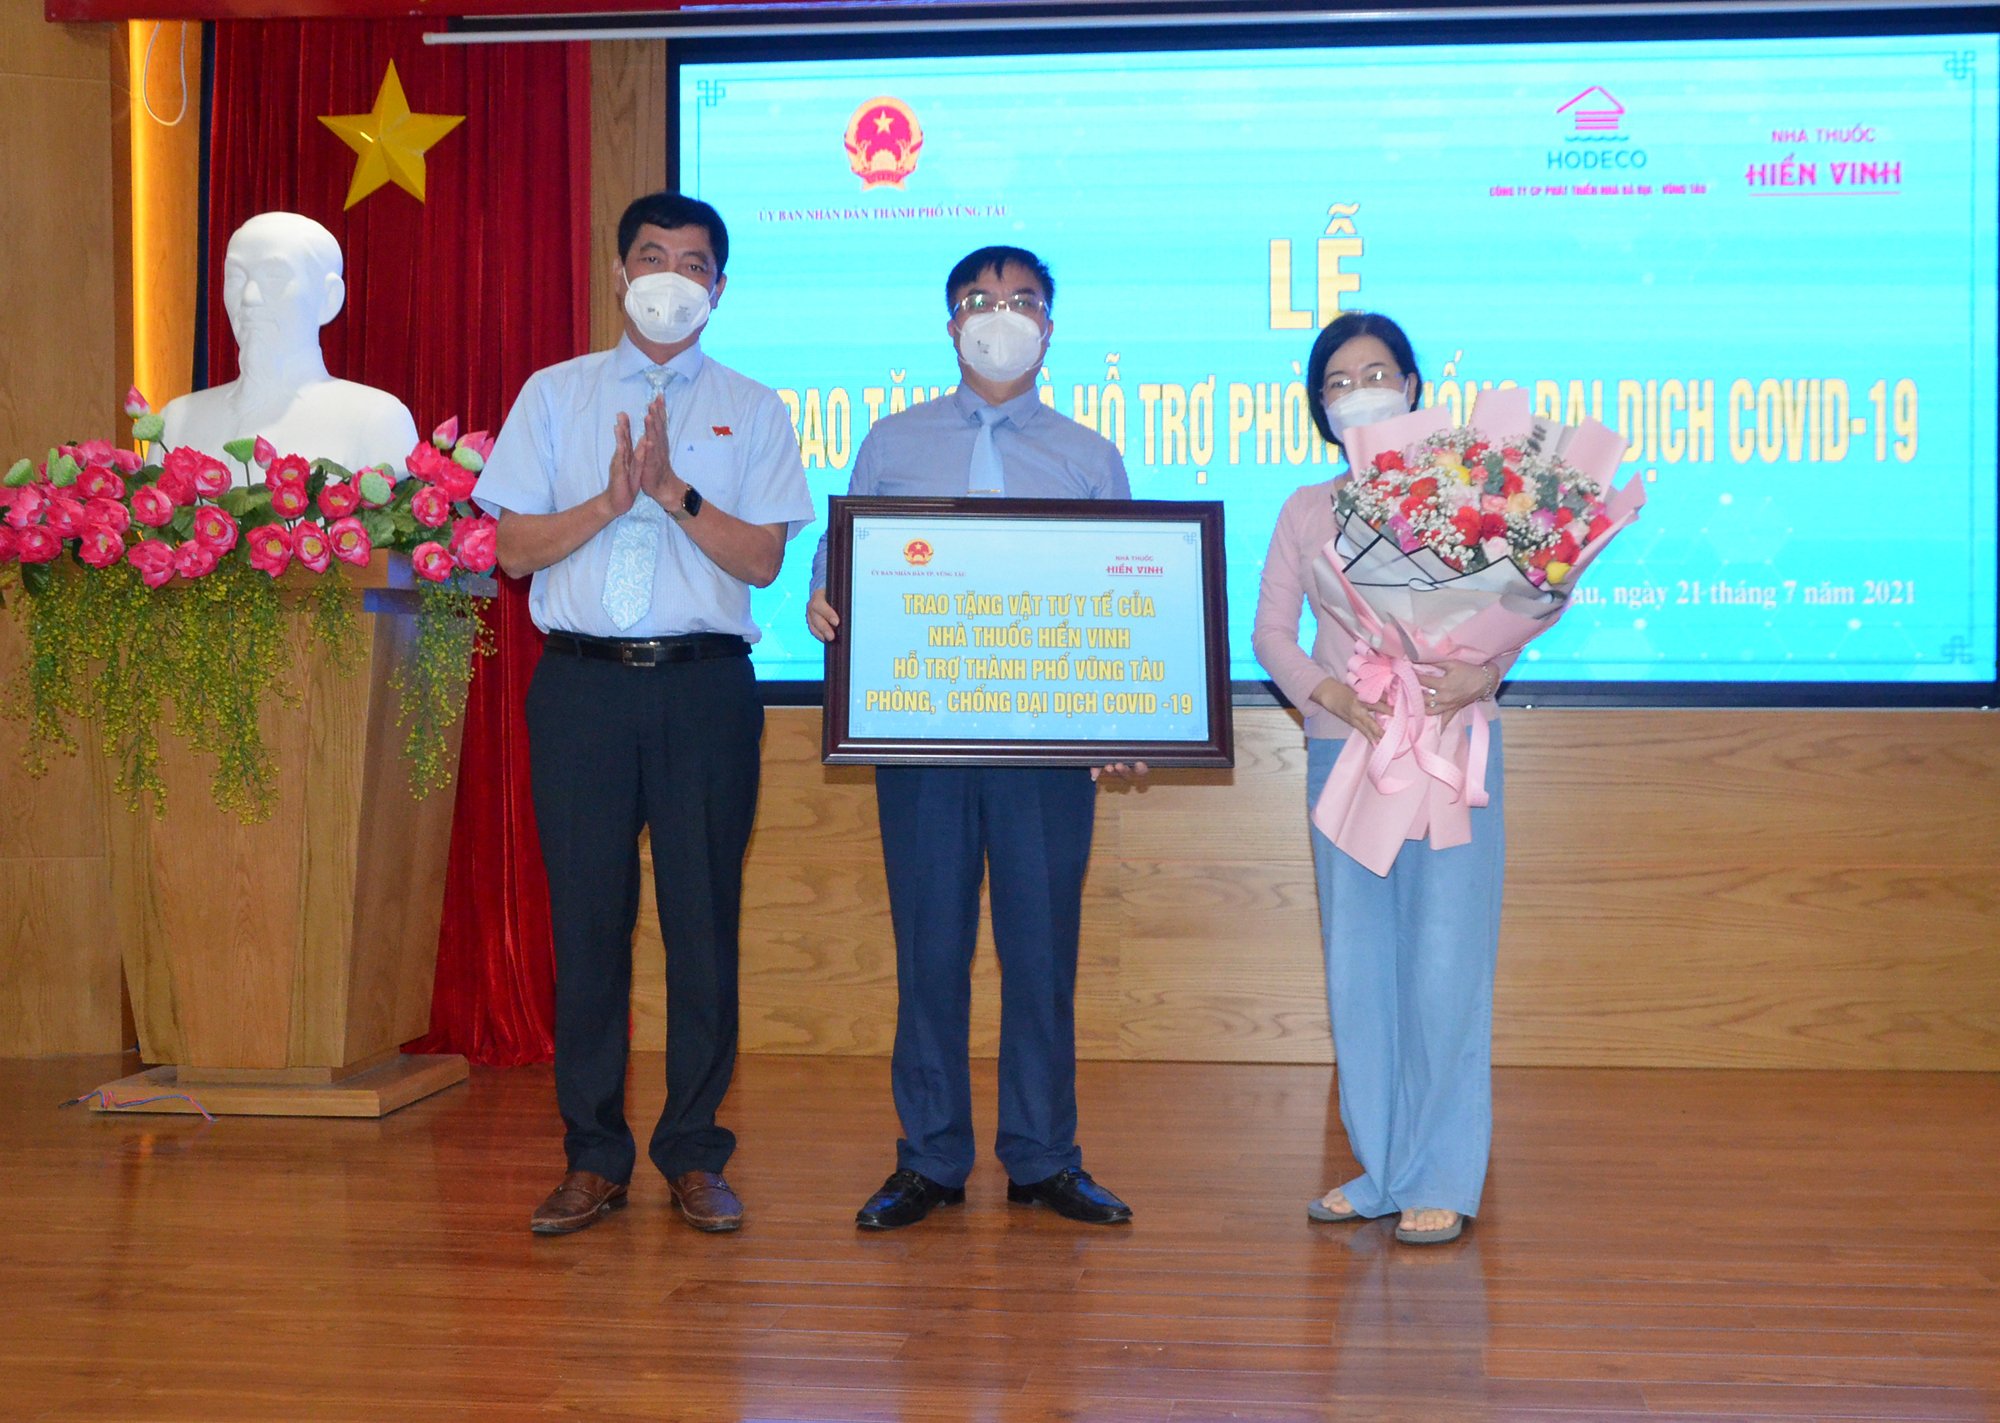 Bà Nguyễn Thị Hải Yến, đại diện Nhà thuốc Hiển Vinh tặng vật tư y tế cho TP. Vũng Tàu.